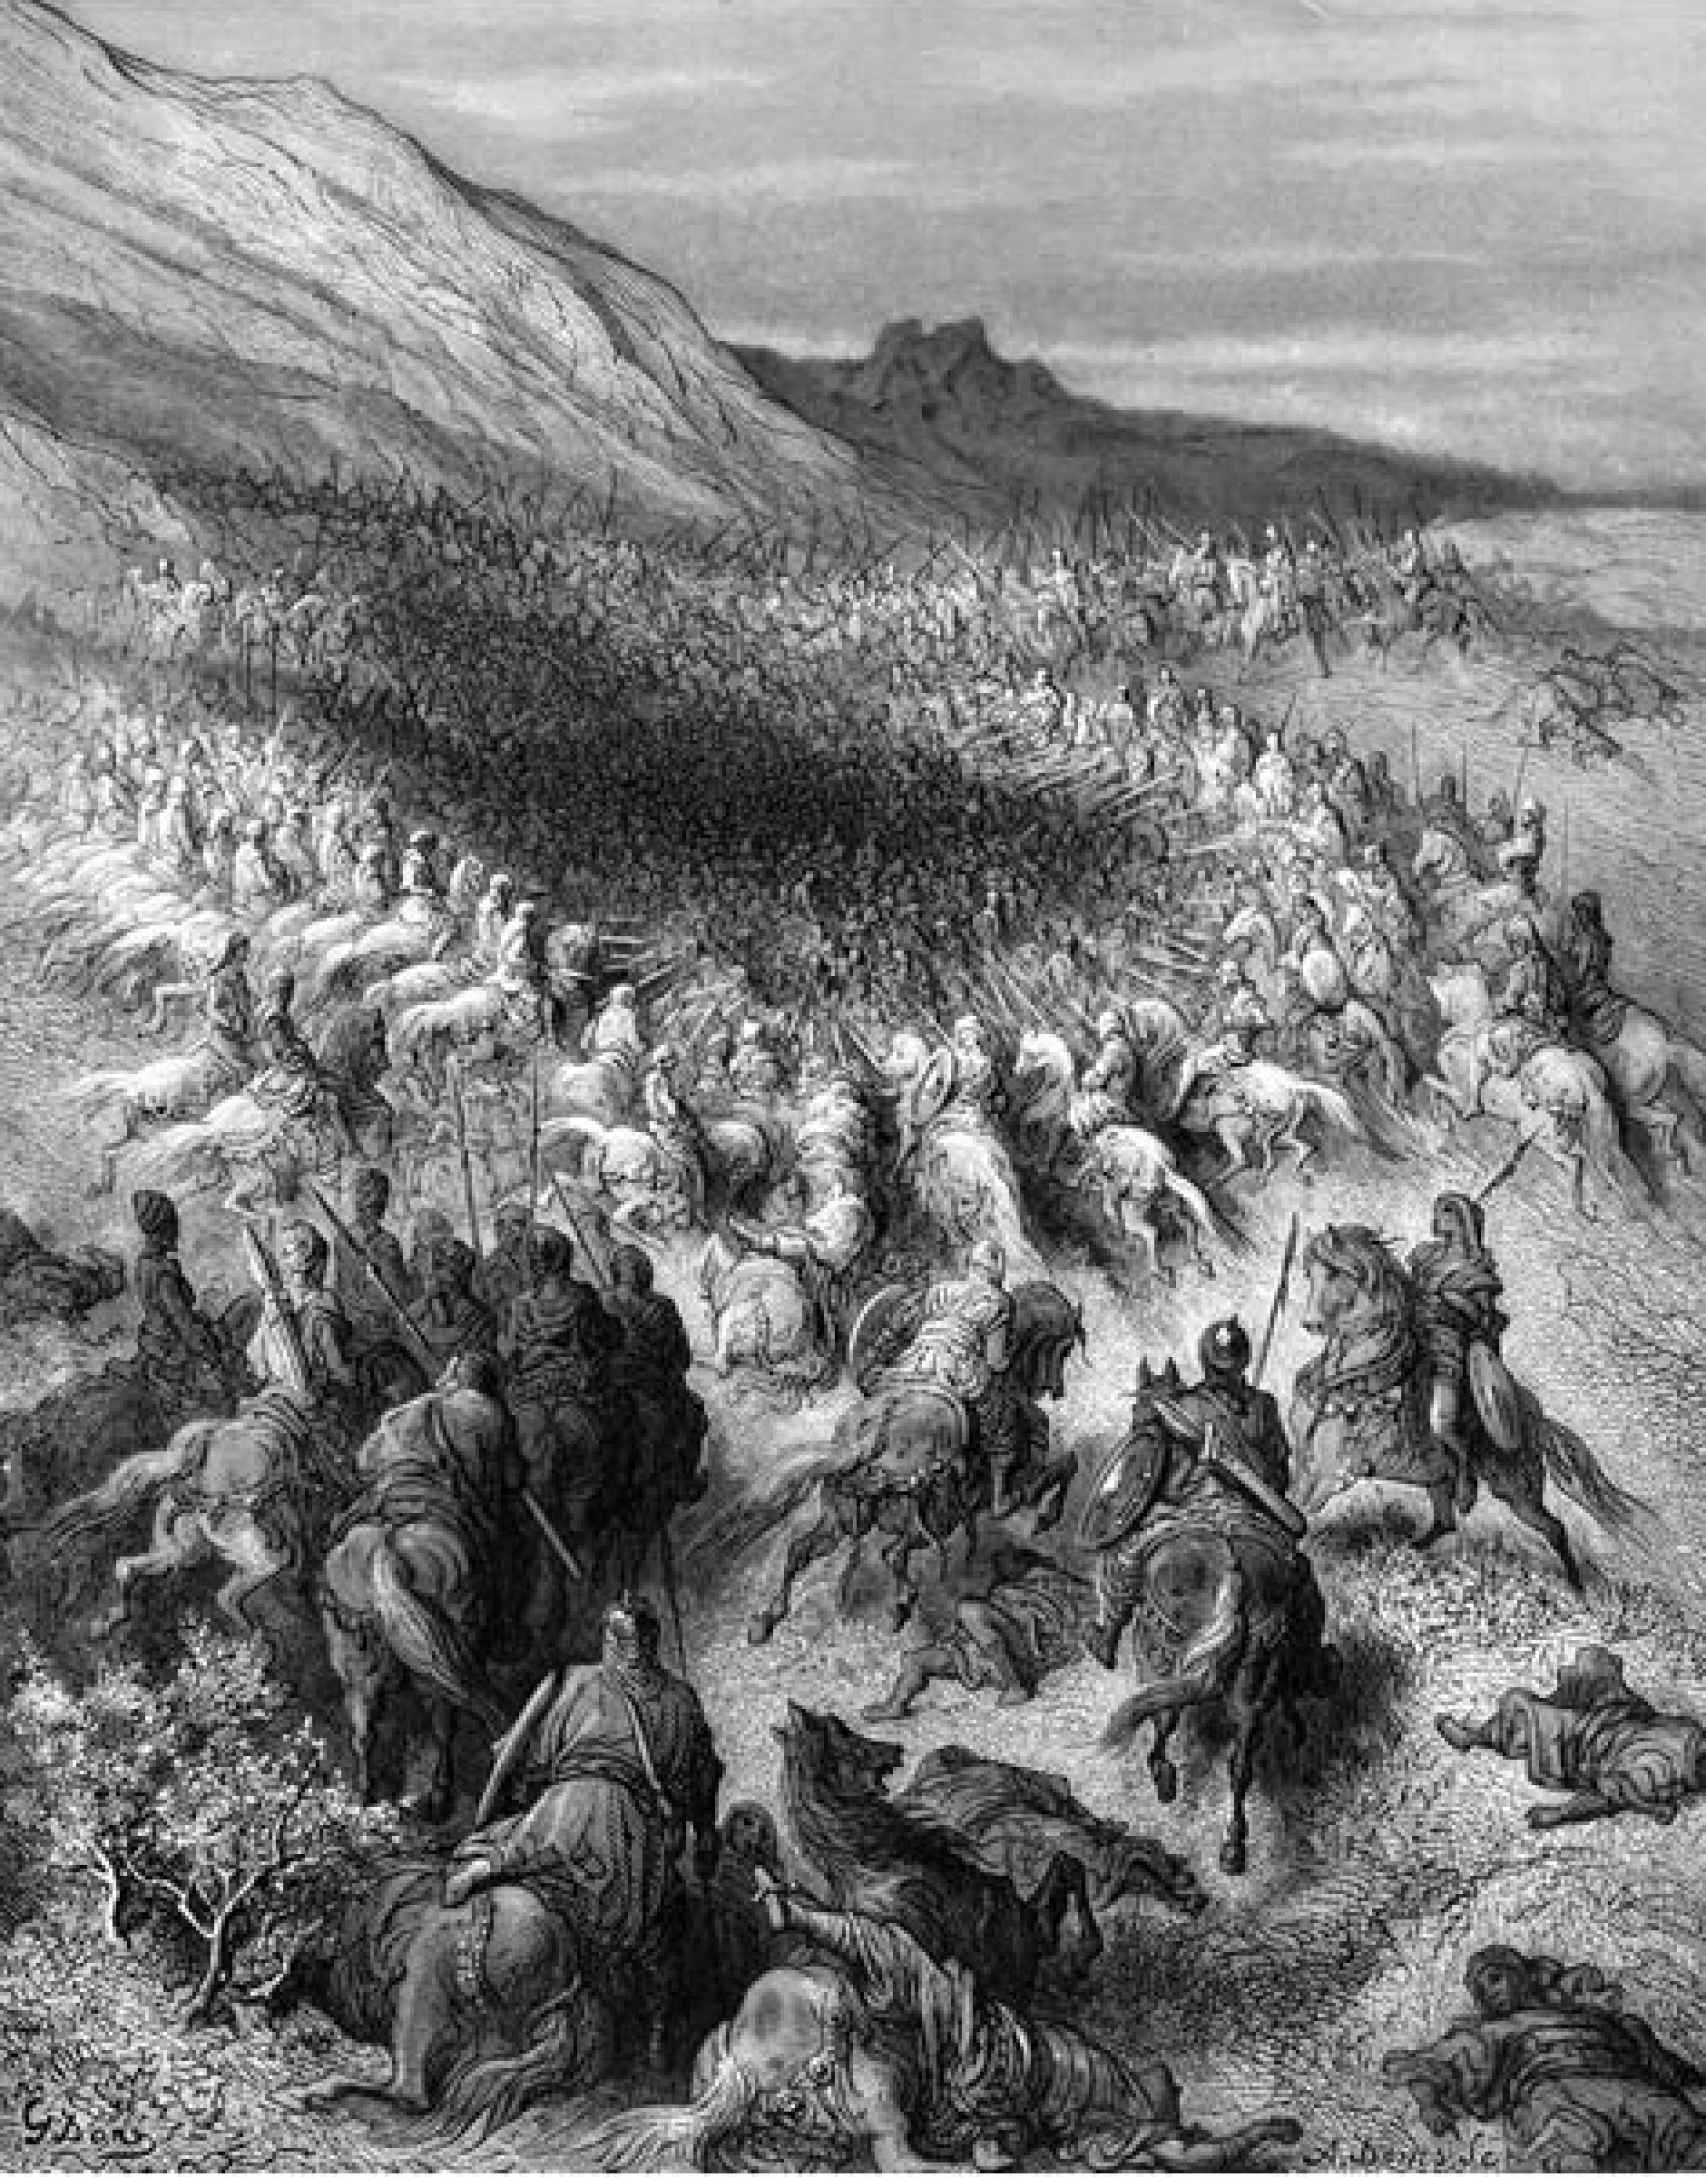 Ejército cruzado siendo aniquilado en los Cuernos de Hattin según Gustavé Doré. S. XIX.